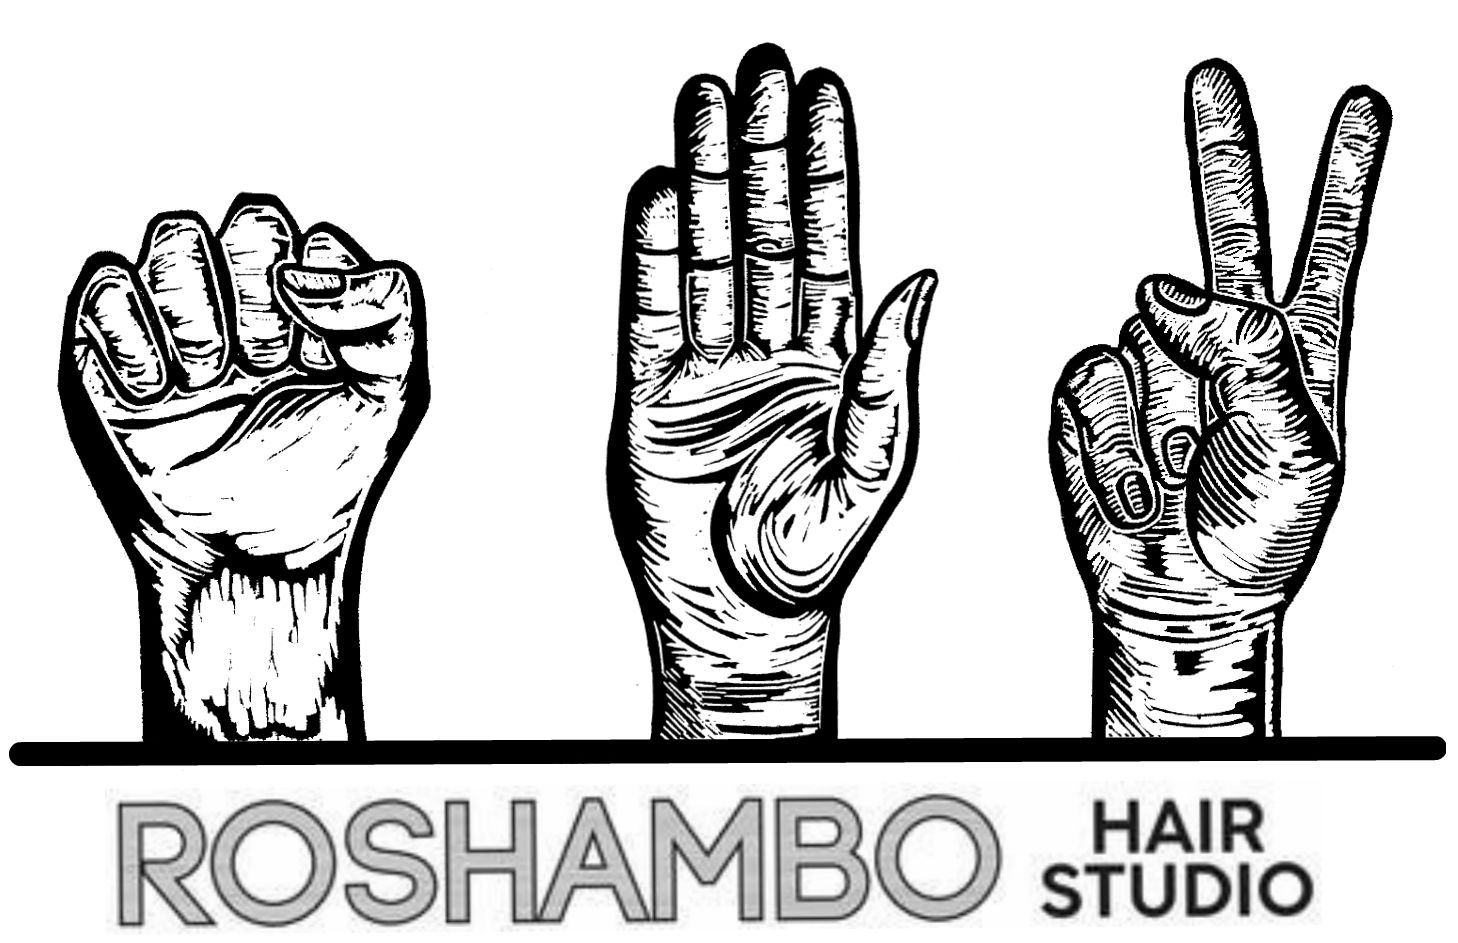 Roshambo Hair Studio - New Site